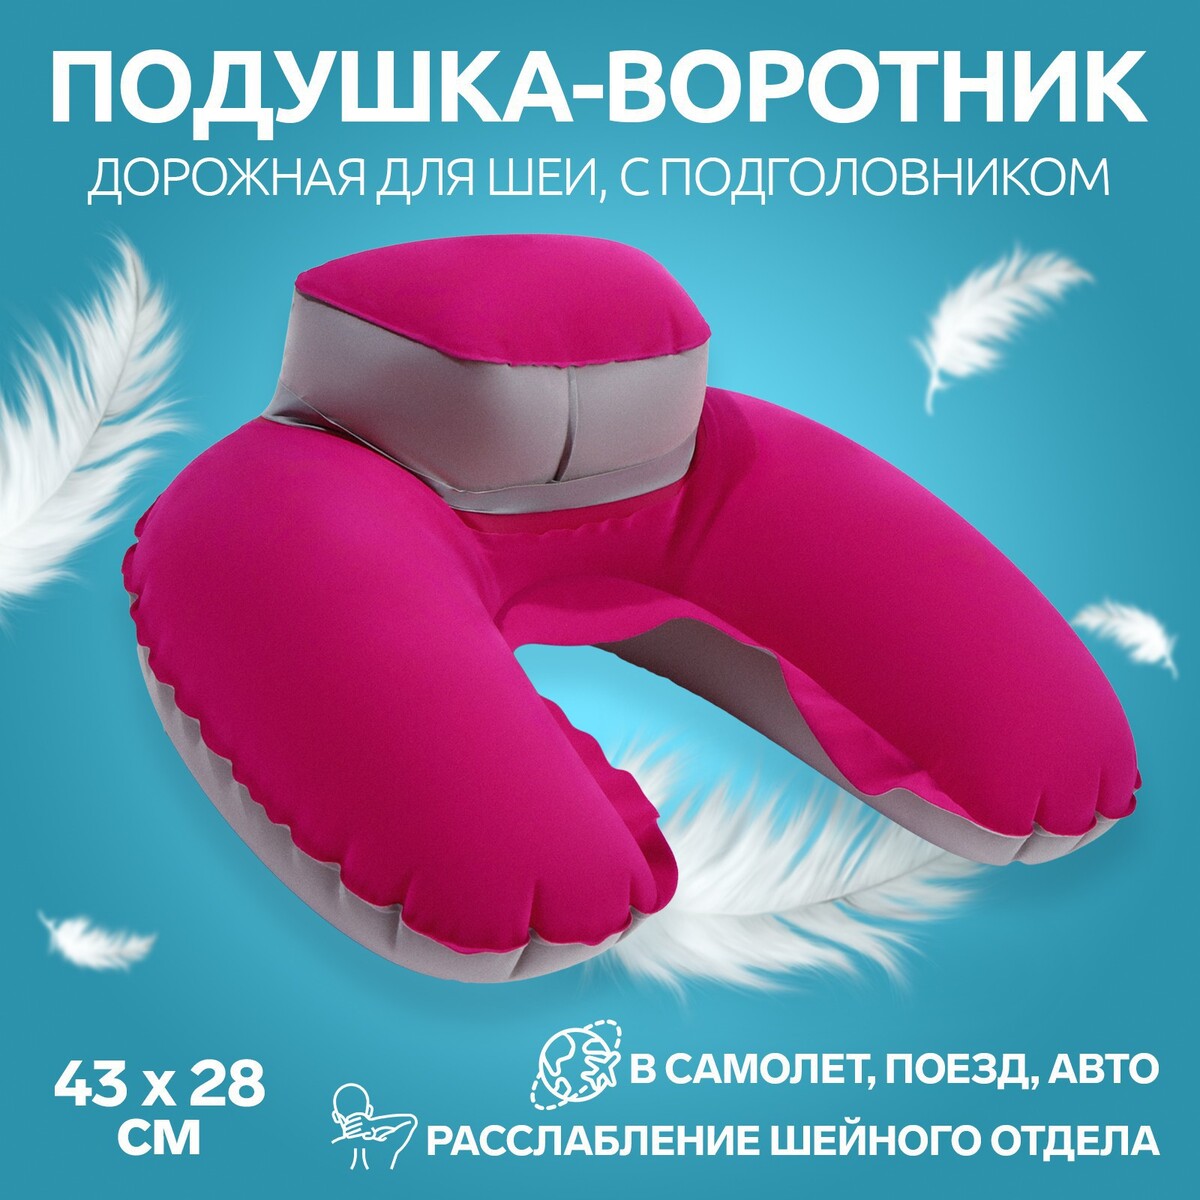 Подушка-воротник для шеи, с подголовником, надувная, в чехле, 43 × 28 см, цвет розовый подушка надувная для шеи дорожная пвх